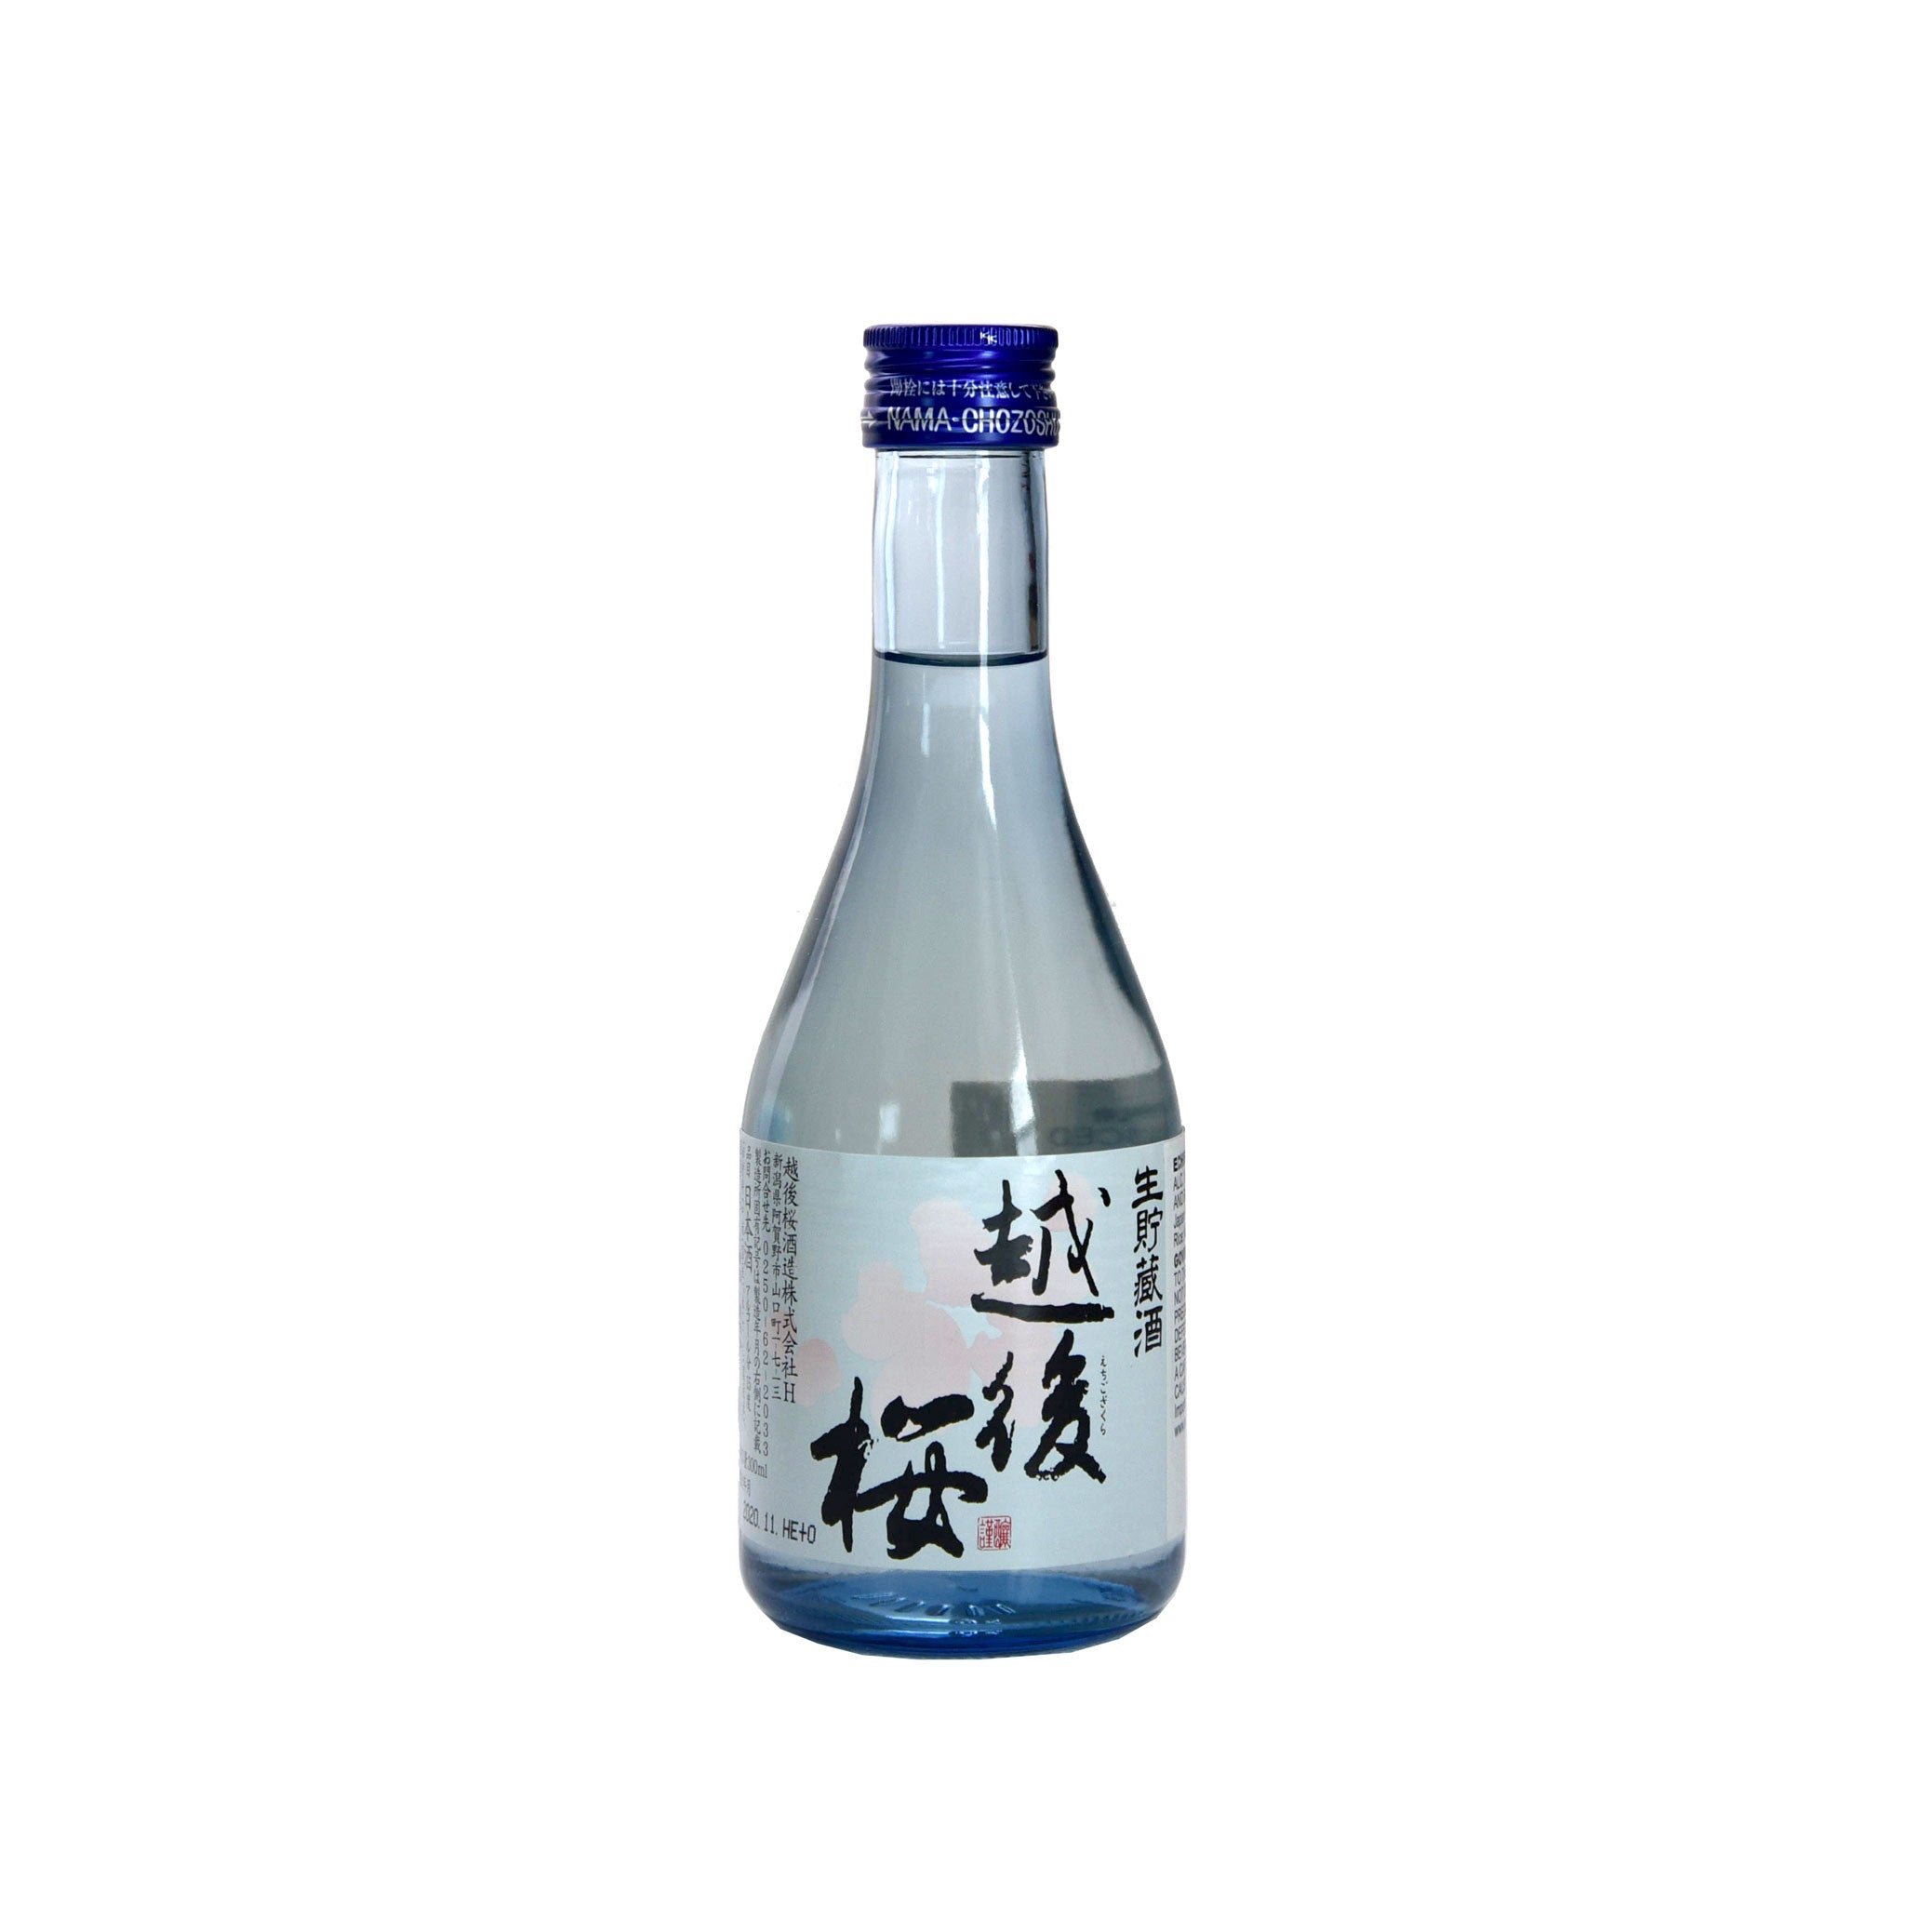 Echigozakura Namachozo Futsushu Sake (Two Pack BTL 10 oz)